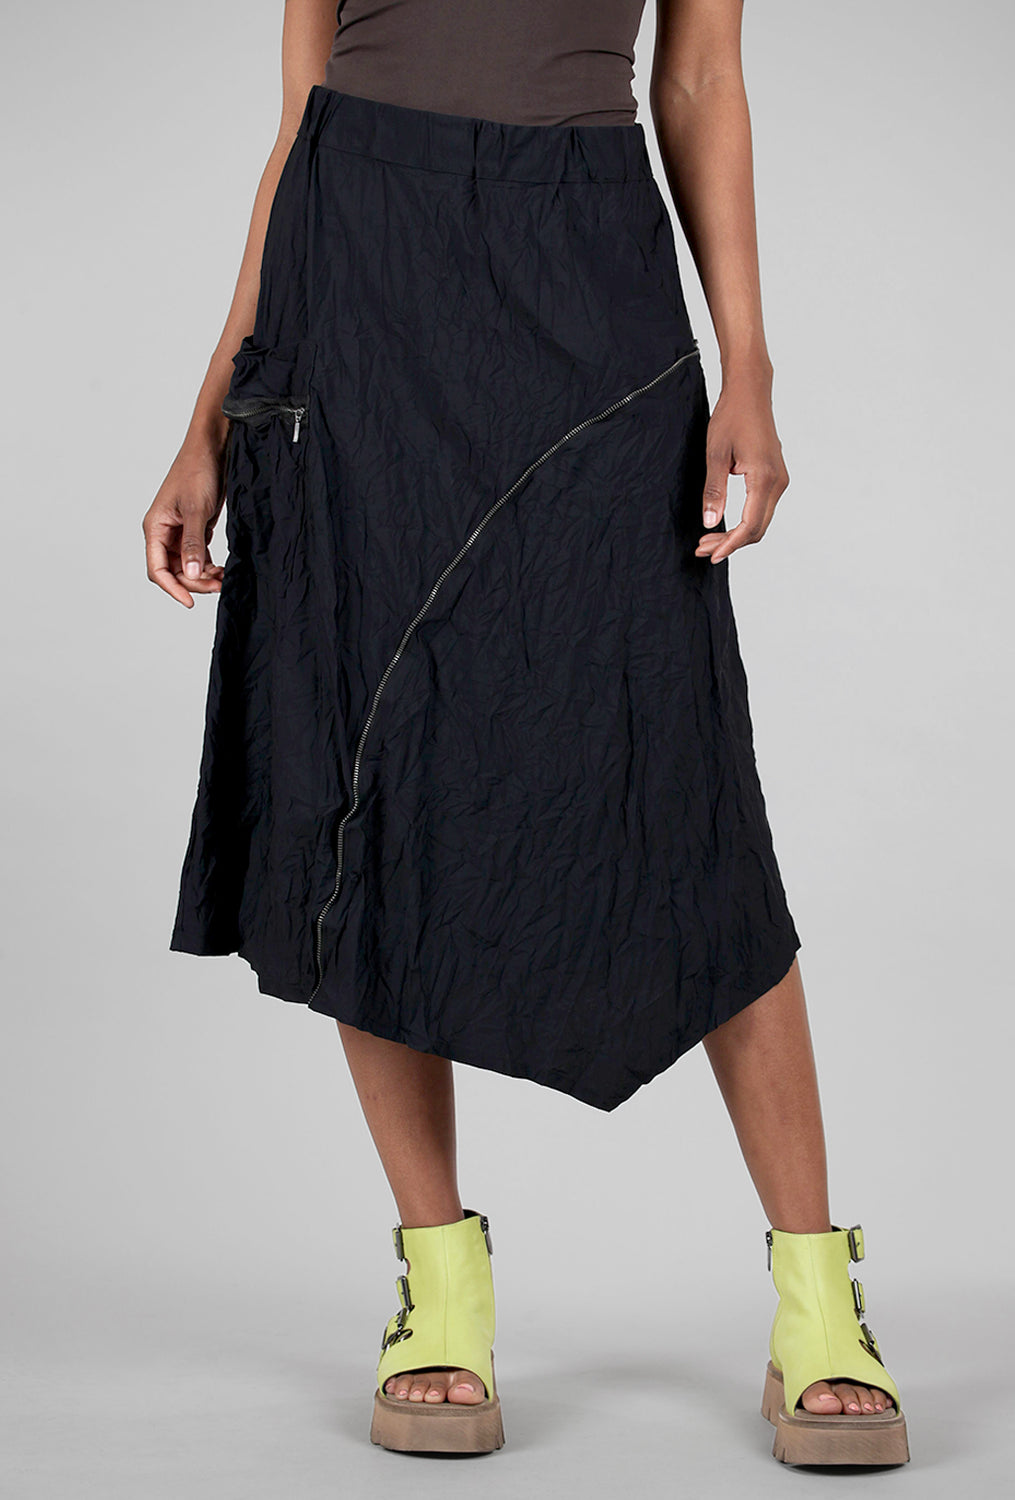 Willow Skirt, Black